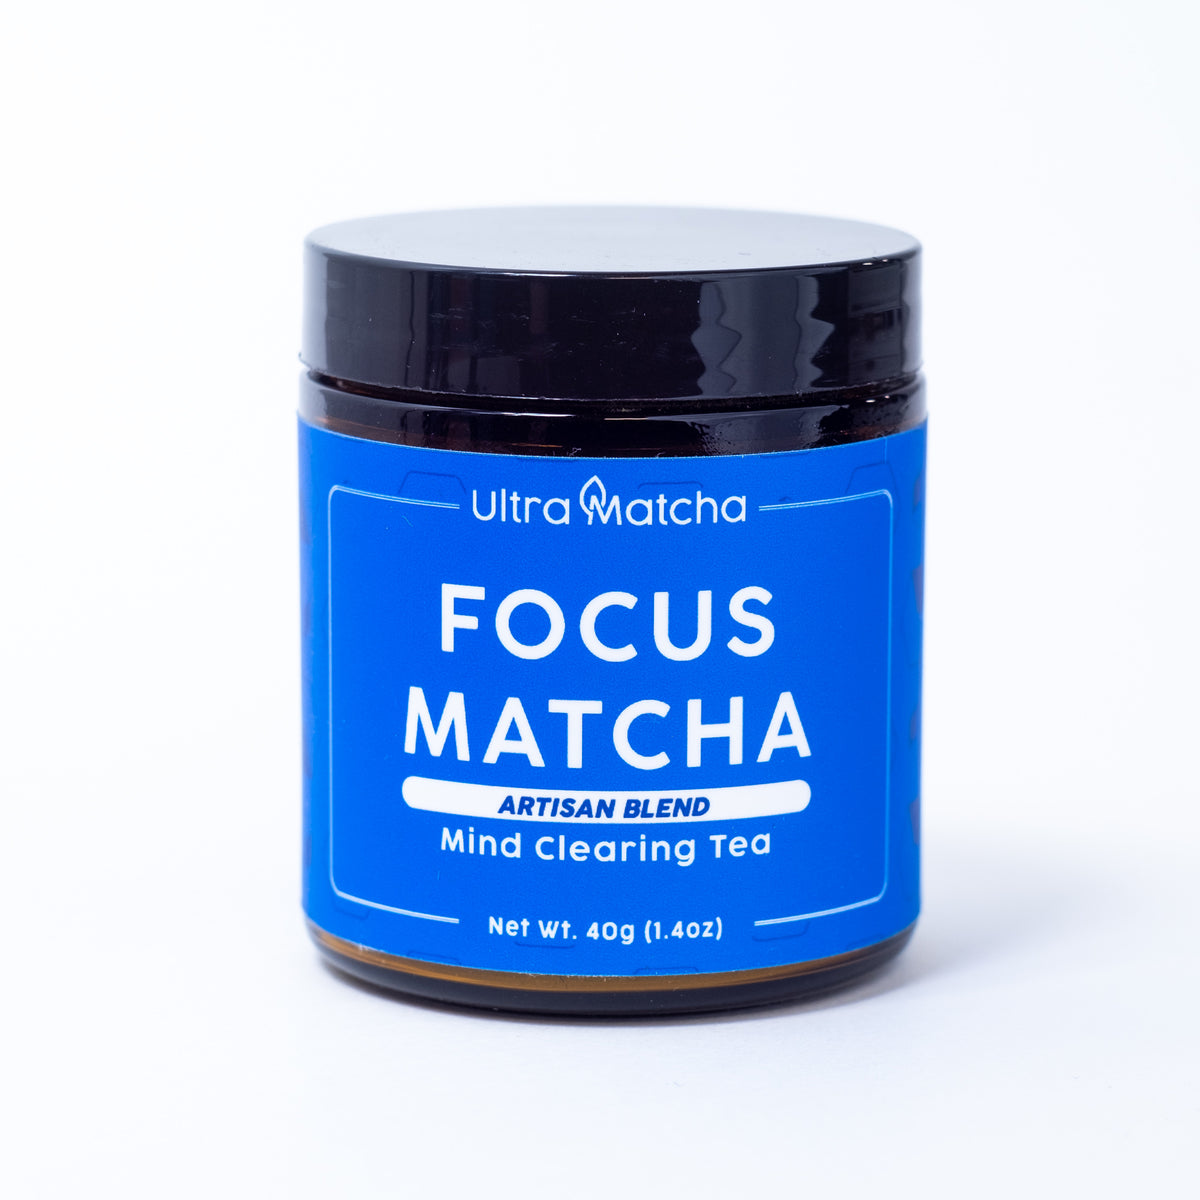 Focus Matcha